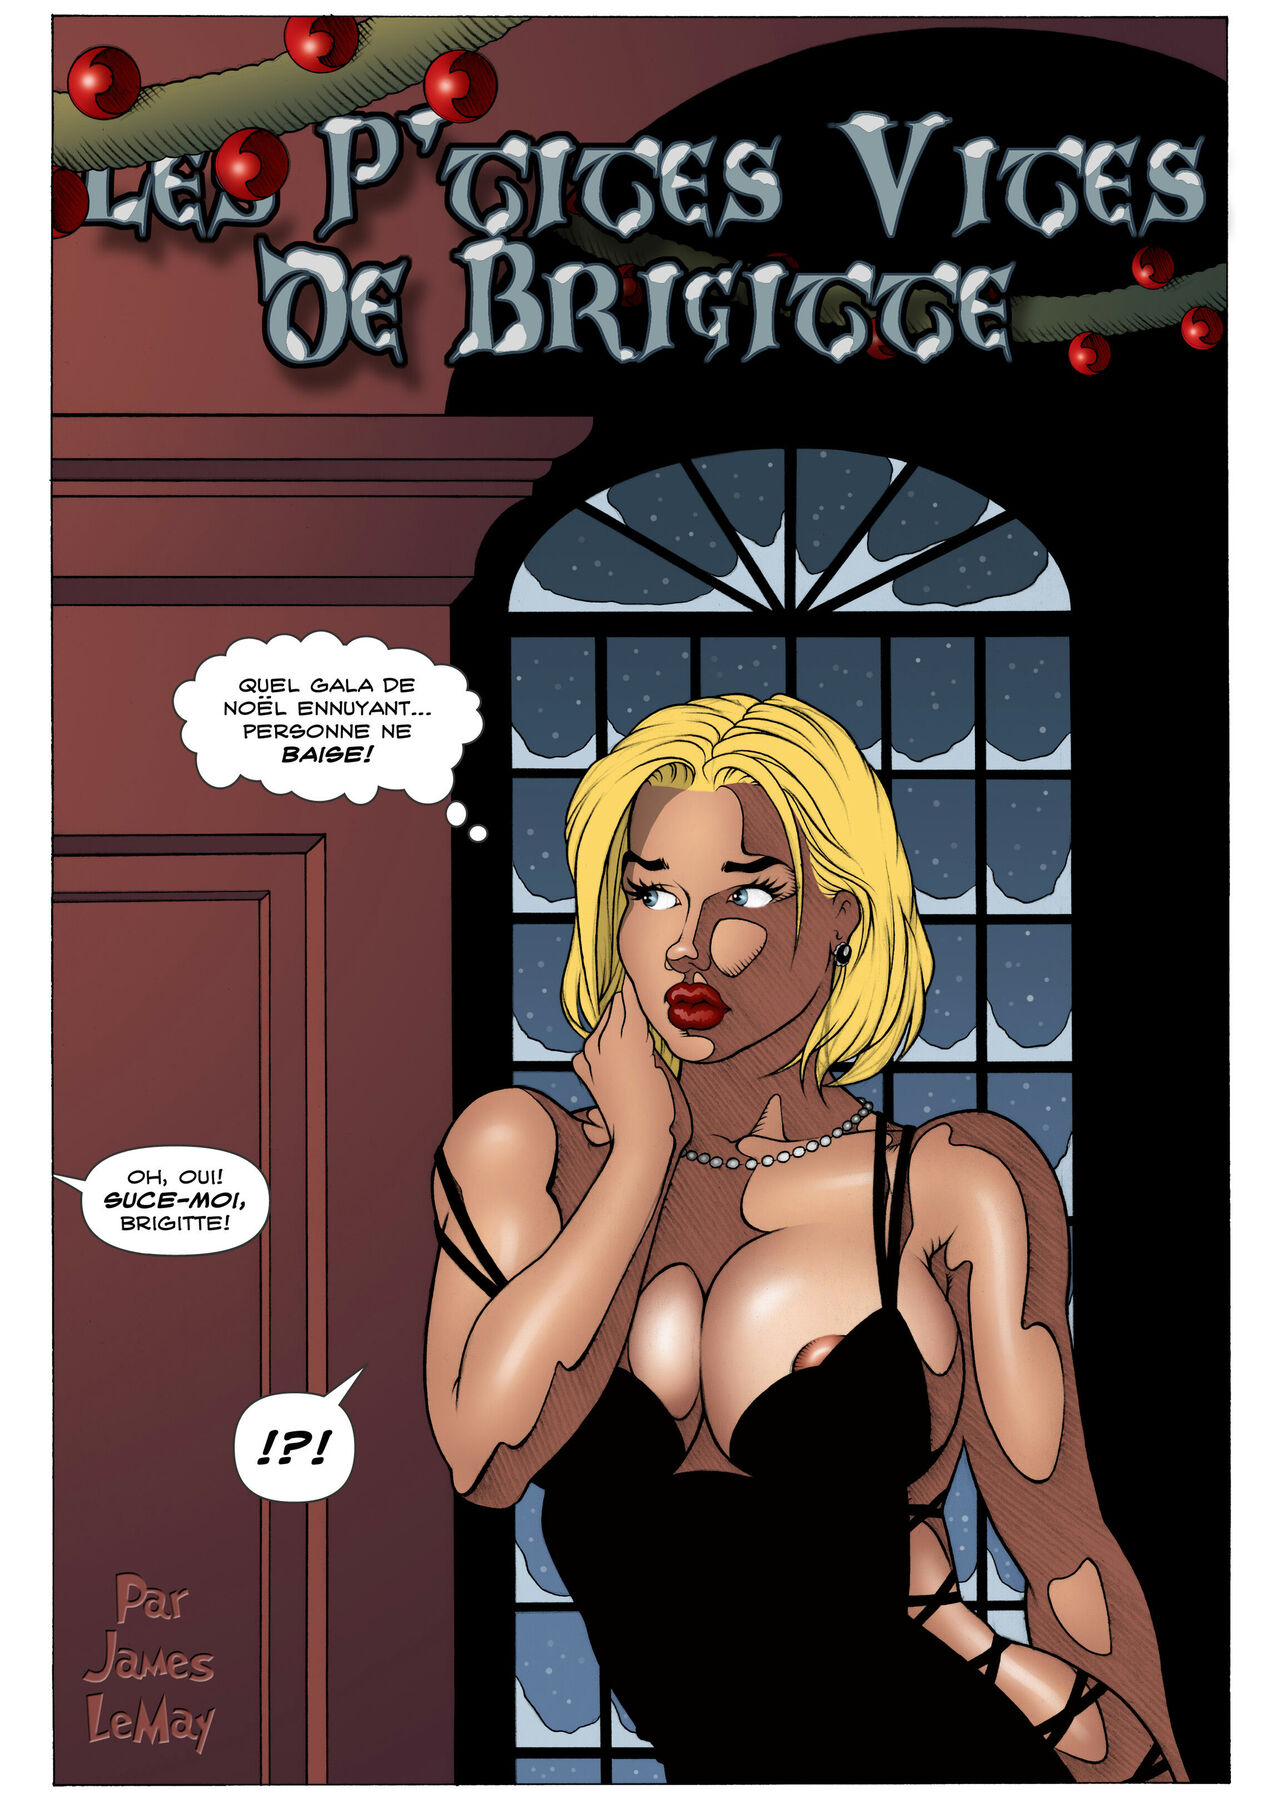 Les p‘tites vites de Brigitte - Vol. 4 numero d'image 136